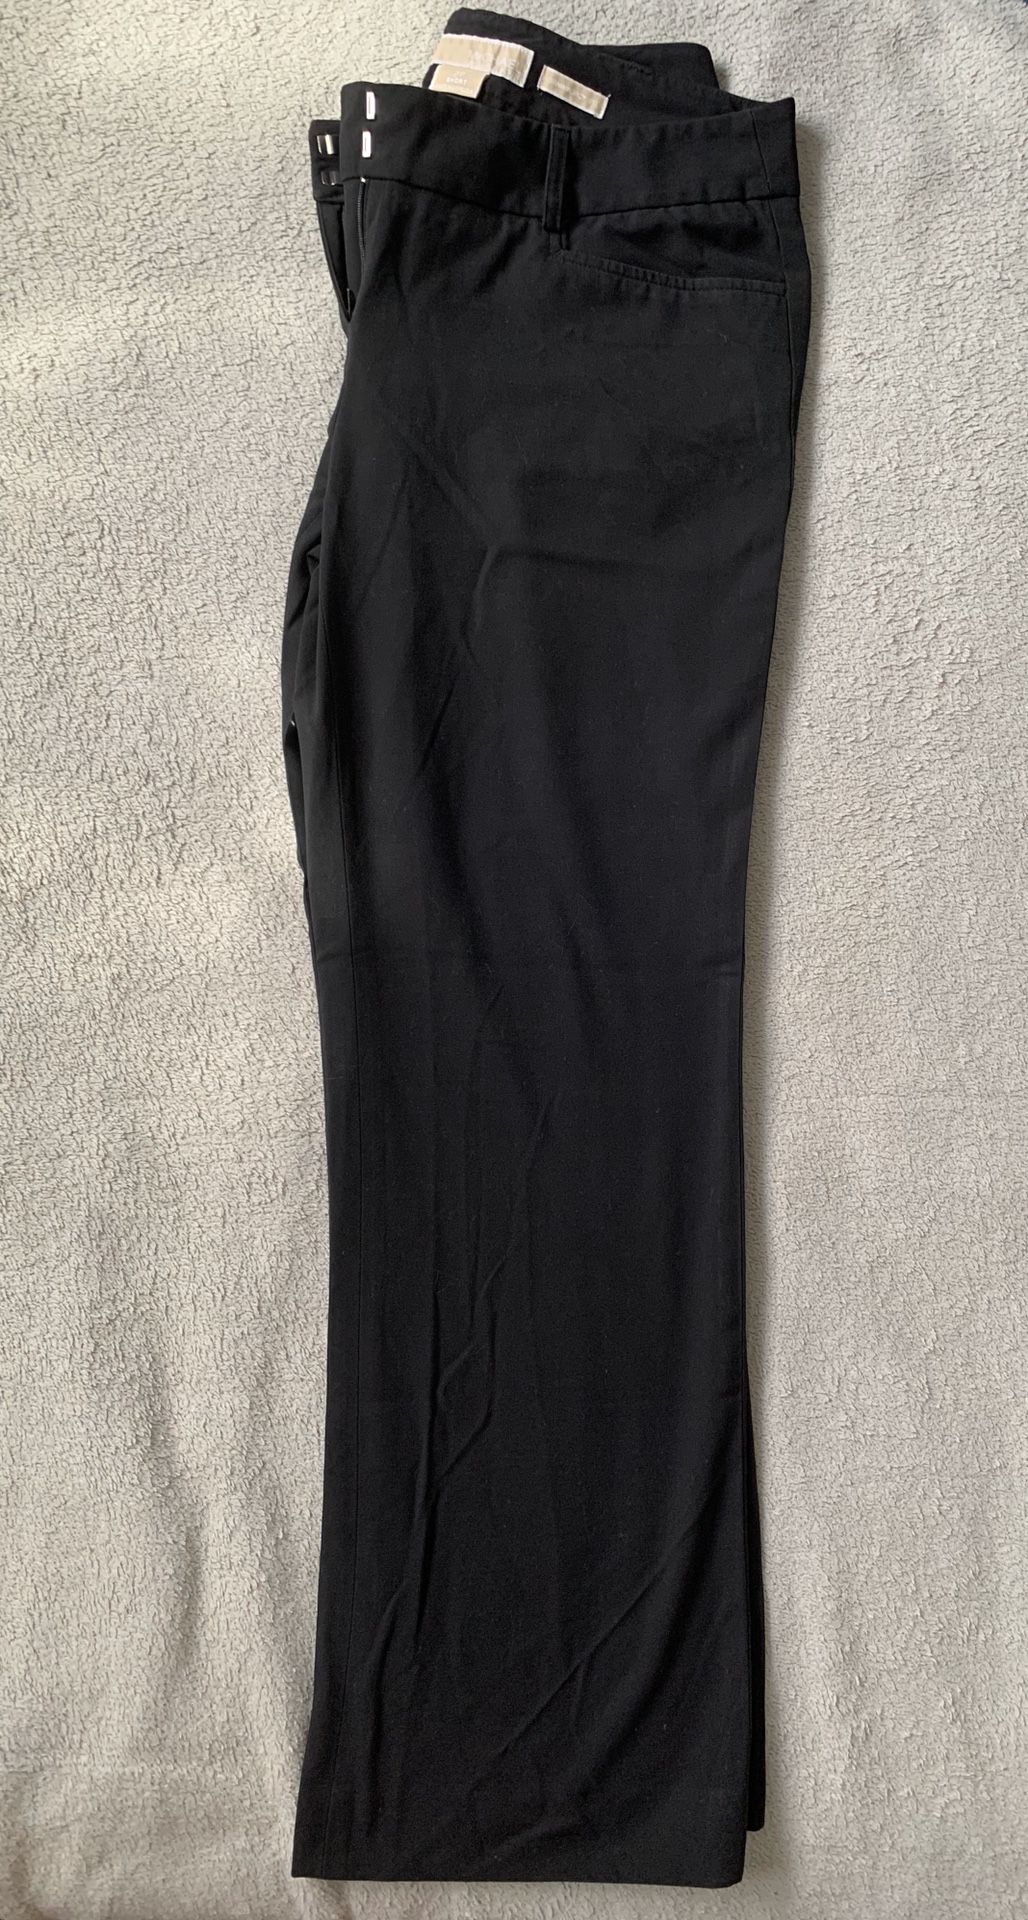 Michael Kors' Women's Slacks ( Black ) - Size 2 P